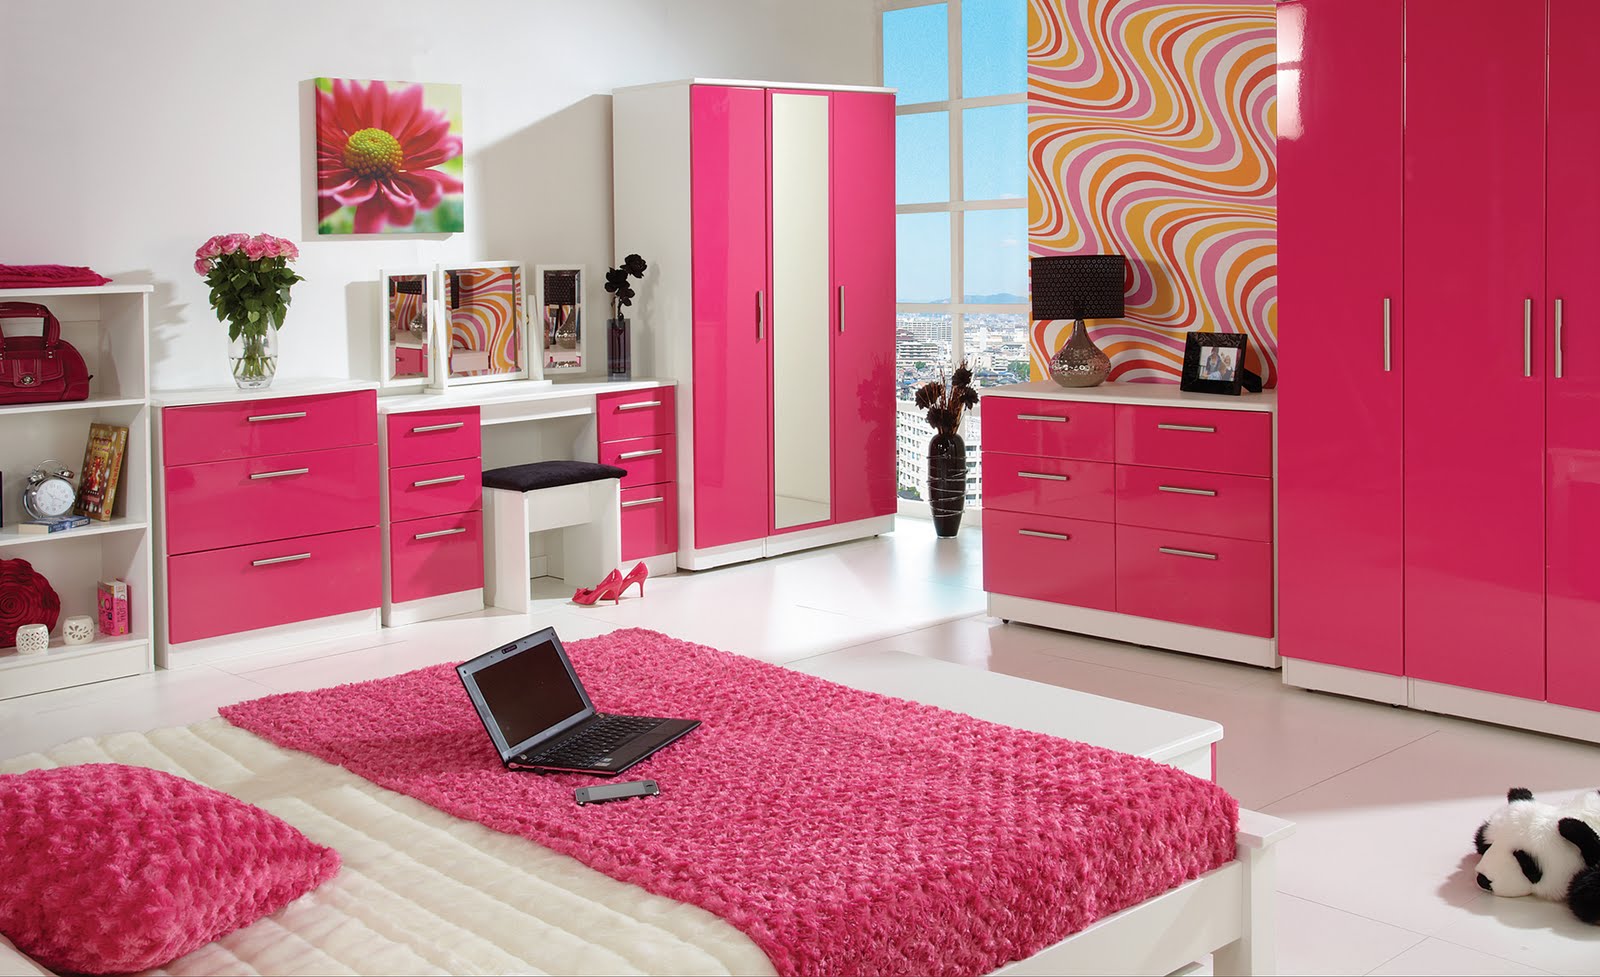 70 Desain Rumah Minimalis Warna Pink Desain Rumah Minimalis Terbaru